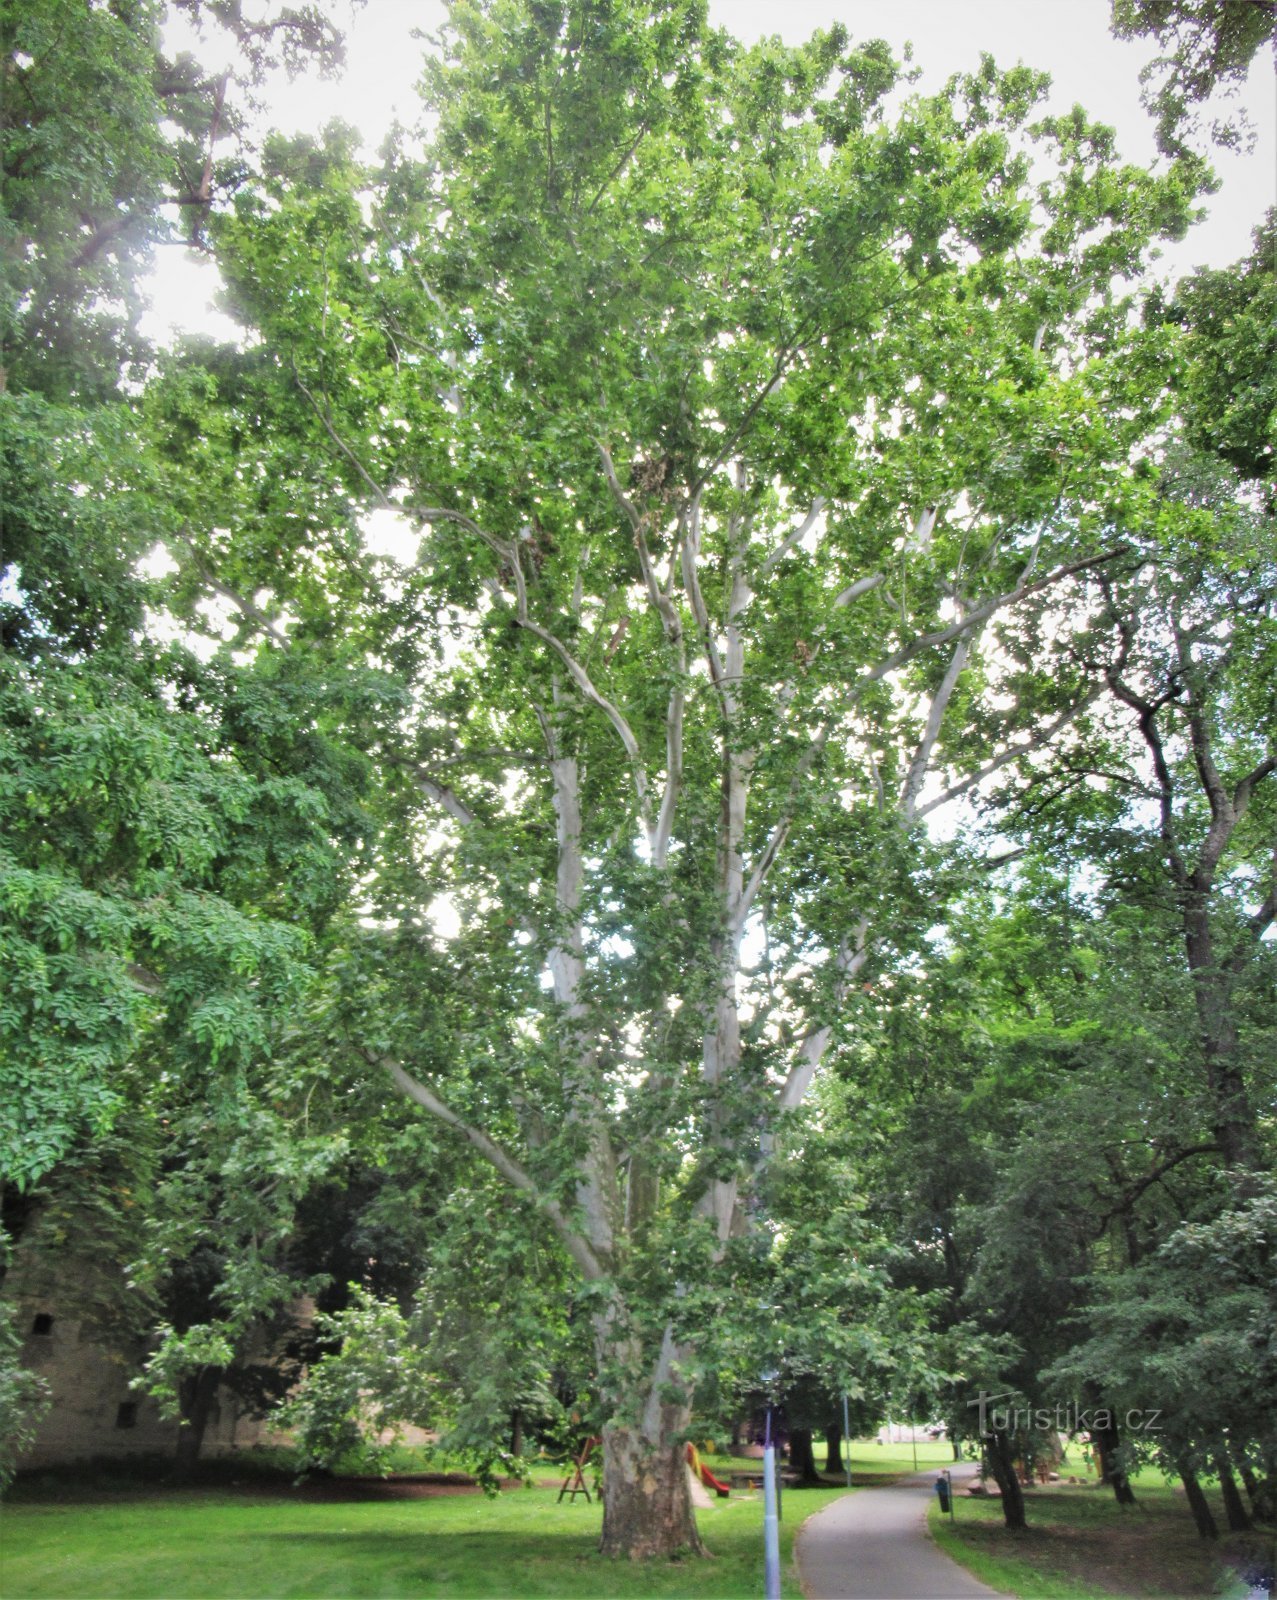 Zabčice - ett minnesplatanträd i parken